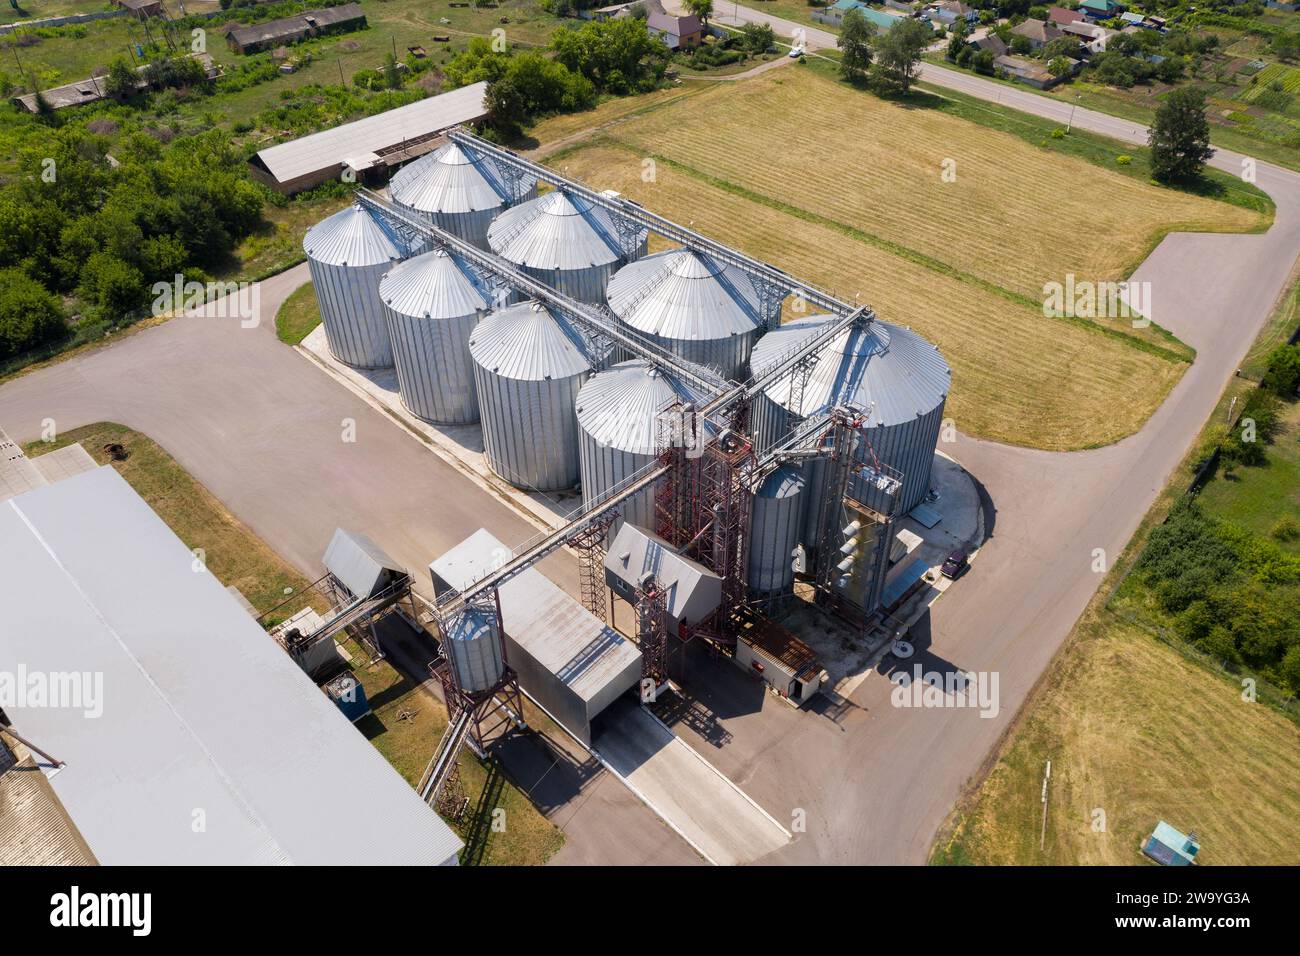 Vue aérienne des silos agricoles, élévateur à grains pour le stockage et le séchage des céréales.. Banque D'Images